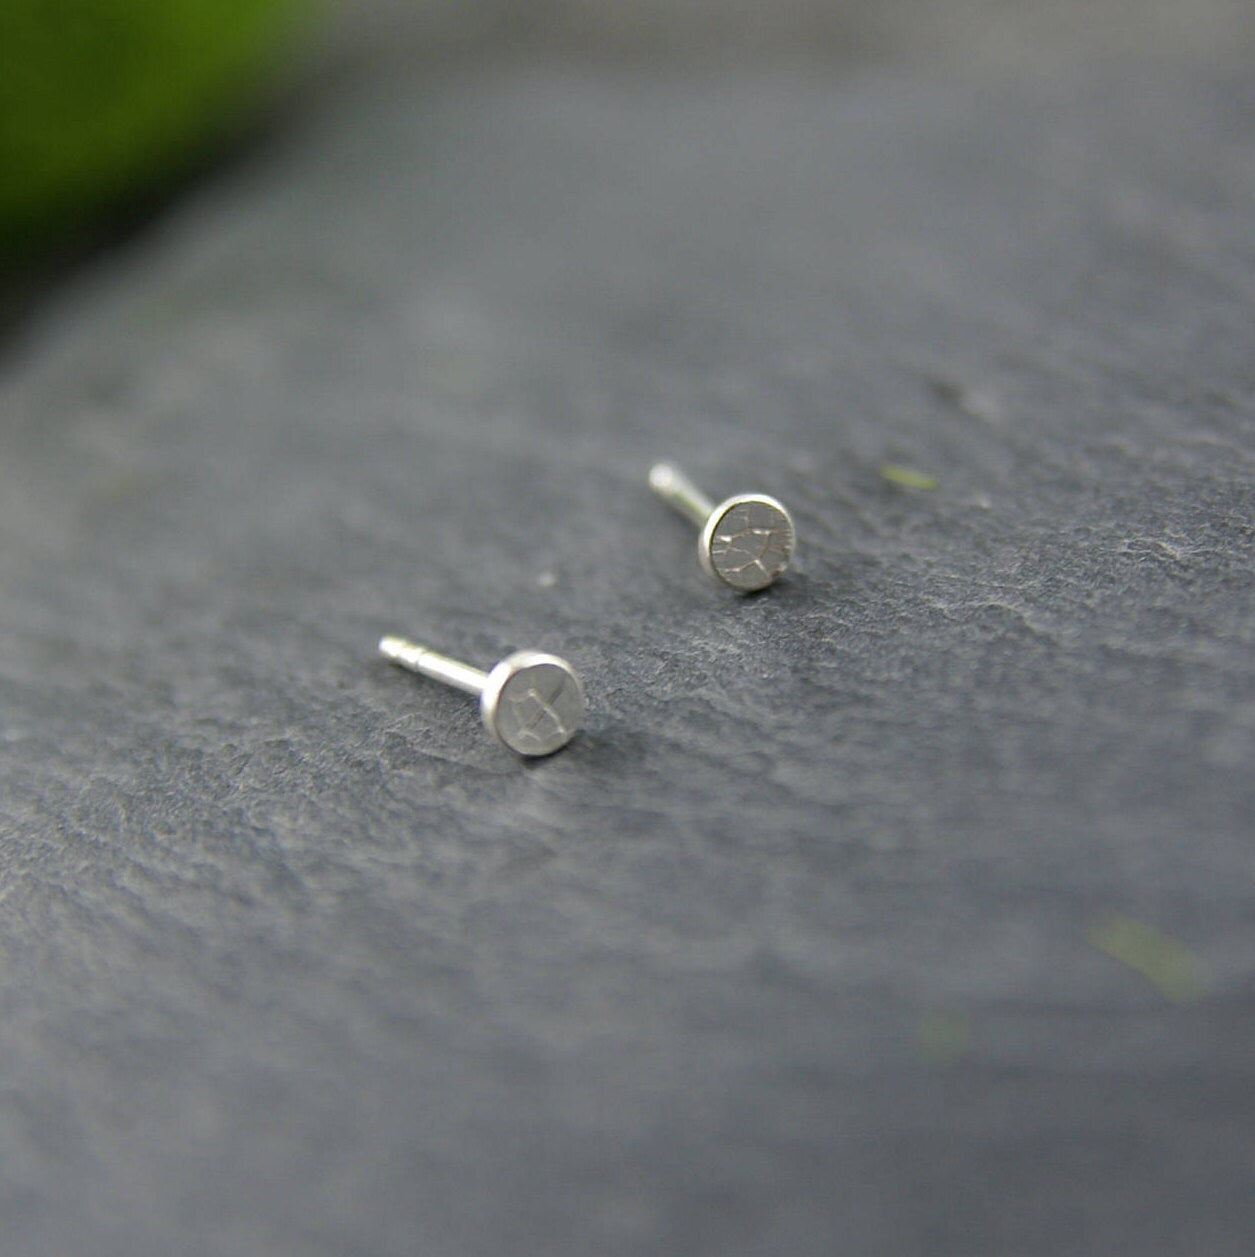 Mini leaf earrings in sterling silver